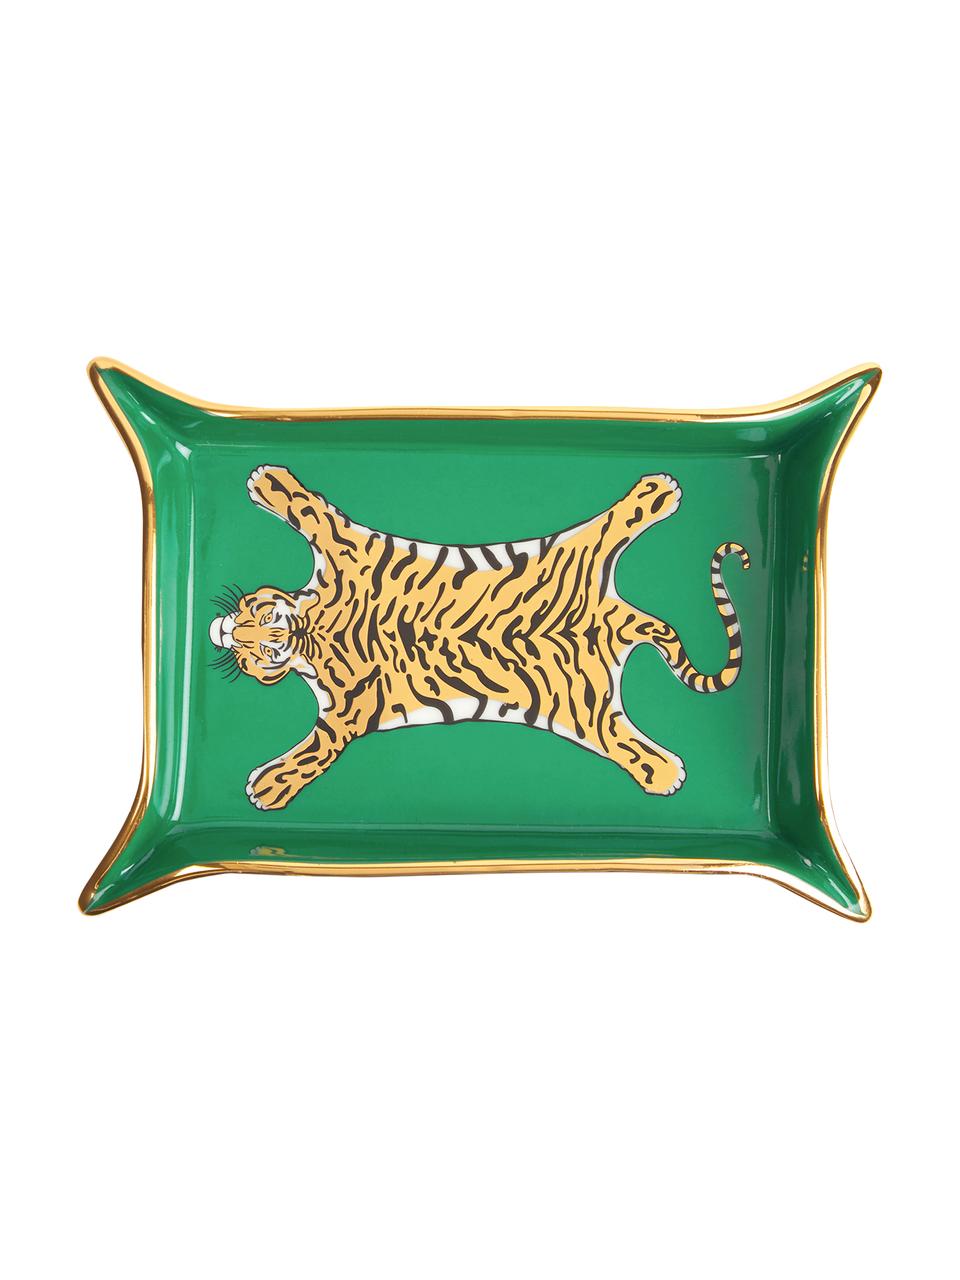 Designer-Schale Tiger, vergoldet, Porzellan, vergoldete Akzente, Innen: Grün, Gold, Beigetöne Außen: Weiß, B 18 x T 13 cm